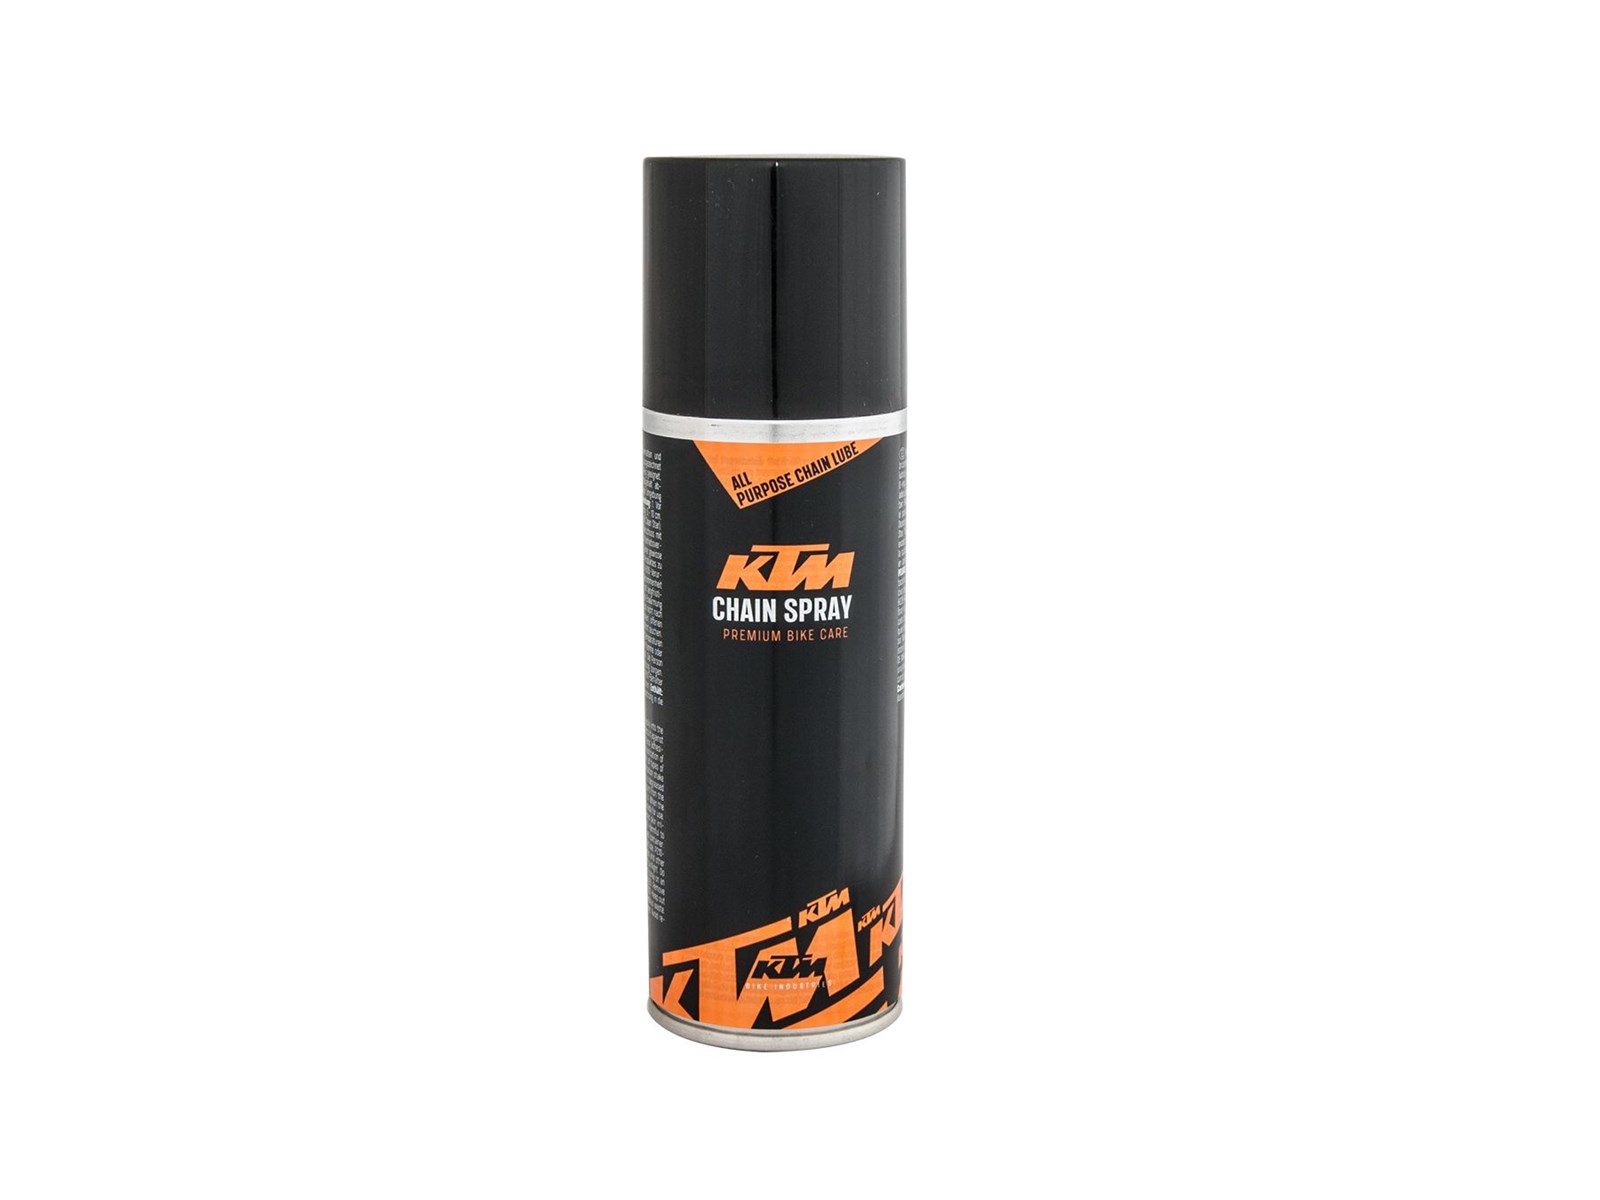 KTM Chain spray 200 ml